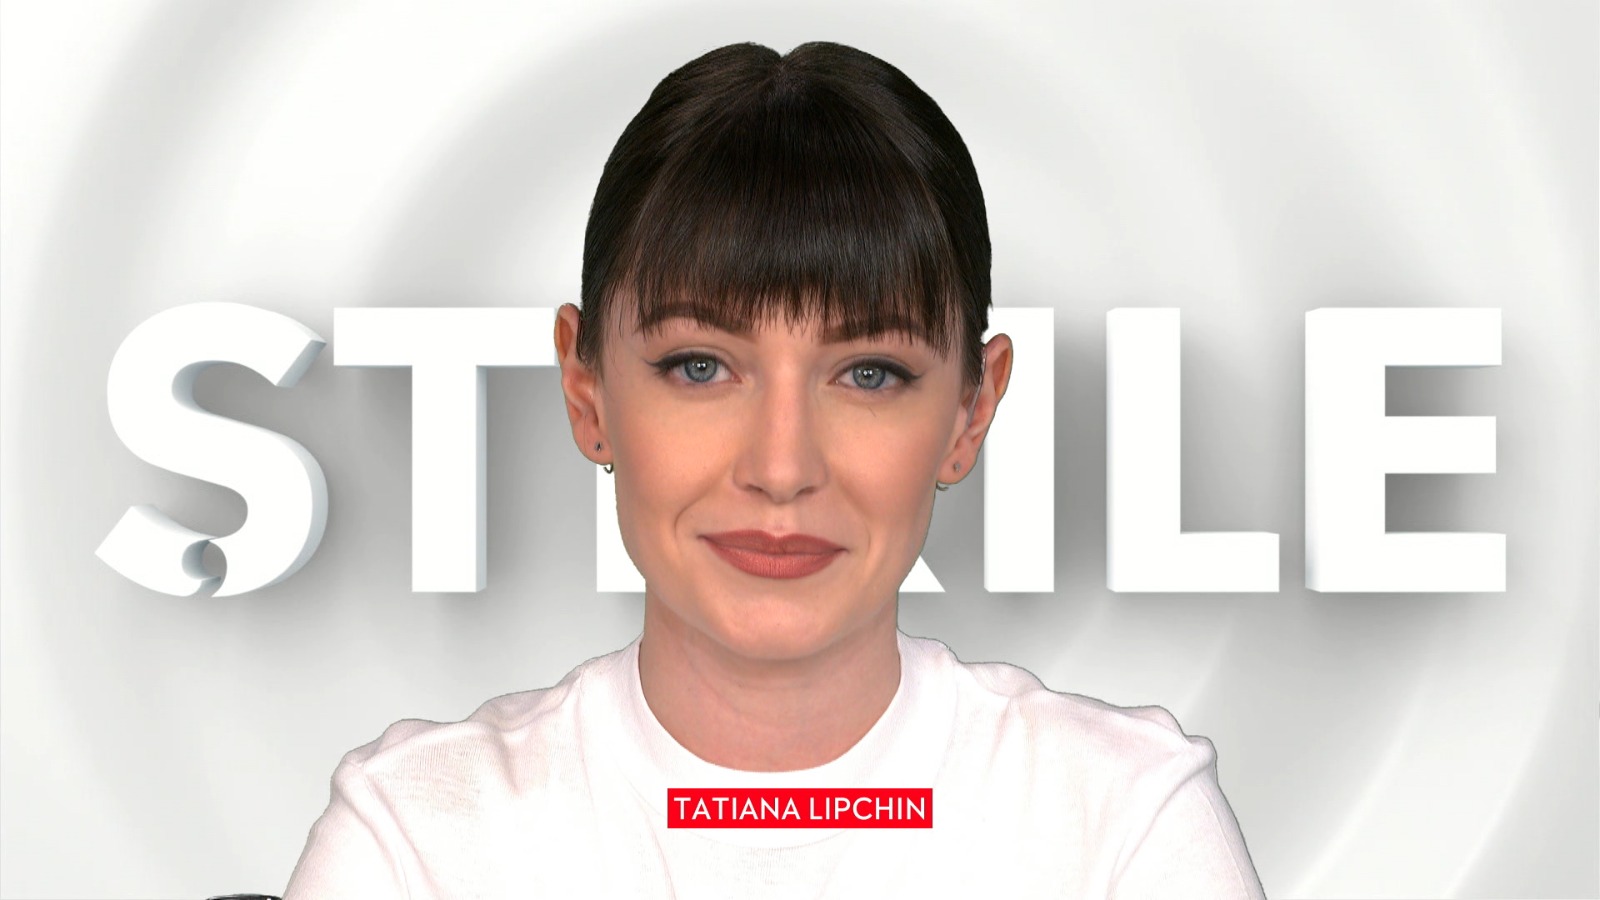 Știrile de la ora 12:00, prezentate de Tatiana Lipchin, 12 octombrie 2020